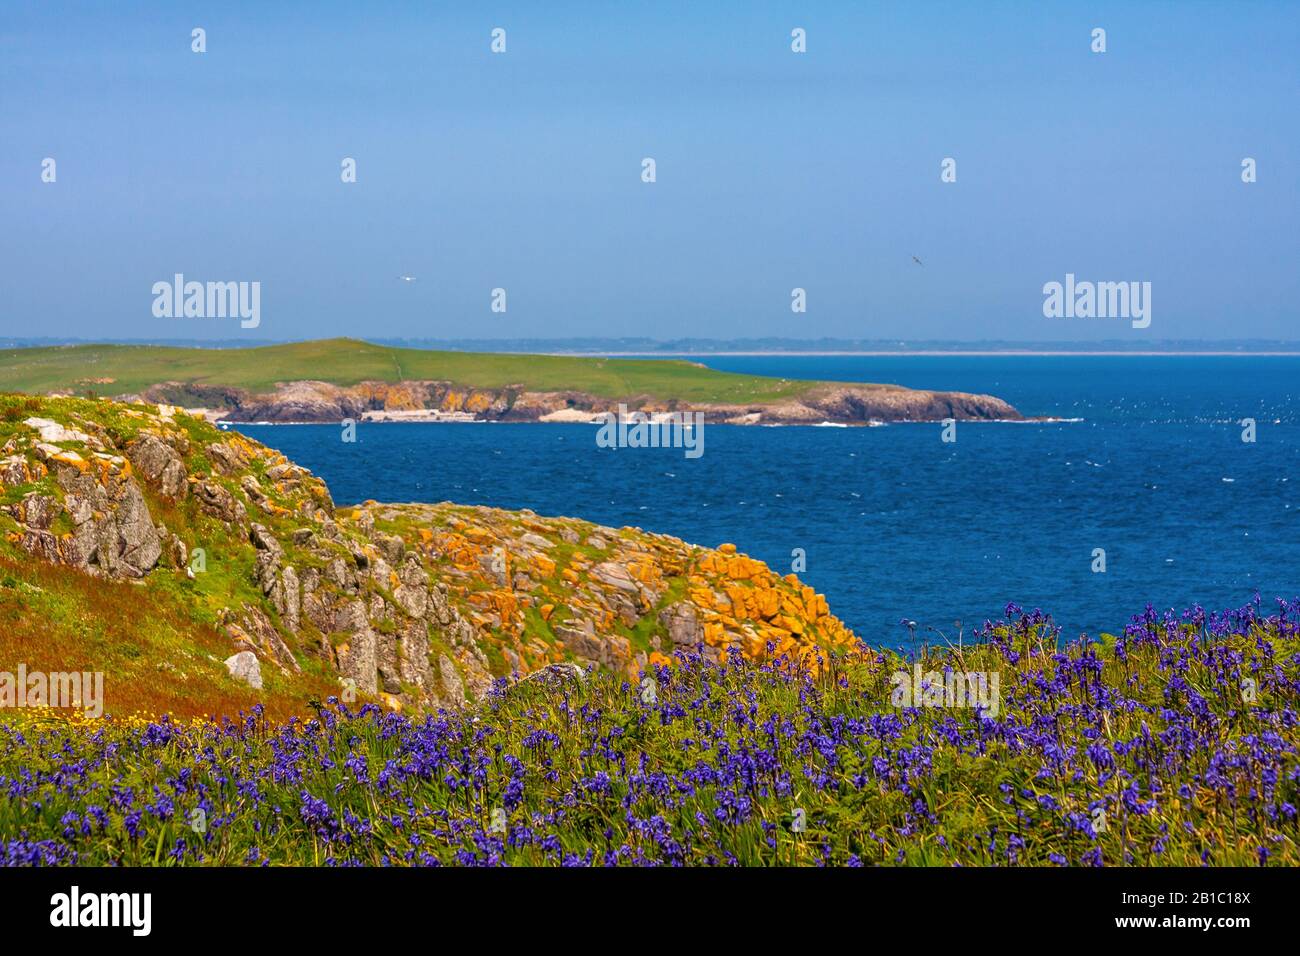 Malerische Landschaft der irischen Küste mit Teppich von Blaupenblumen, die zum Meer hin abfallen, und gelben Flechten bedeckten felsigen Klippen. Saltee Islands, Irland Stockfoto